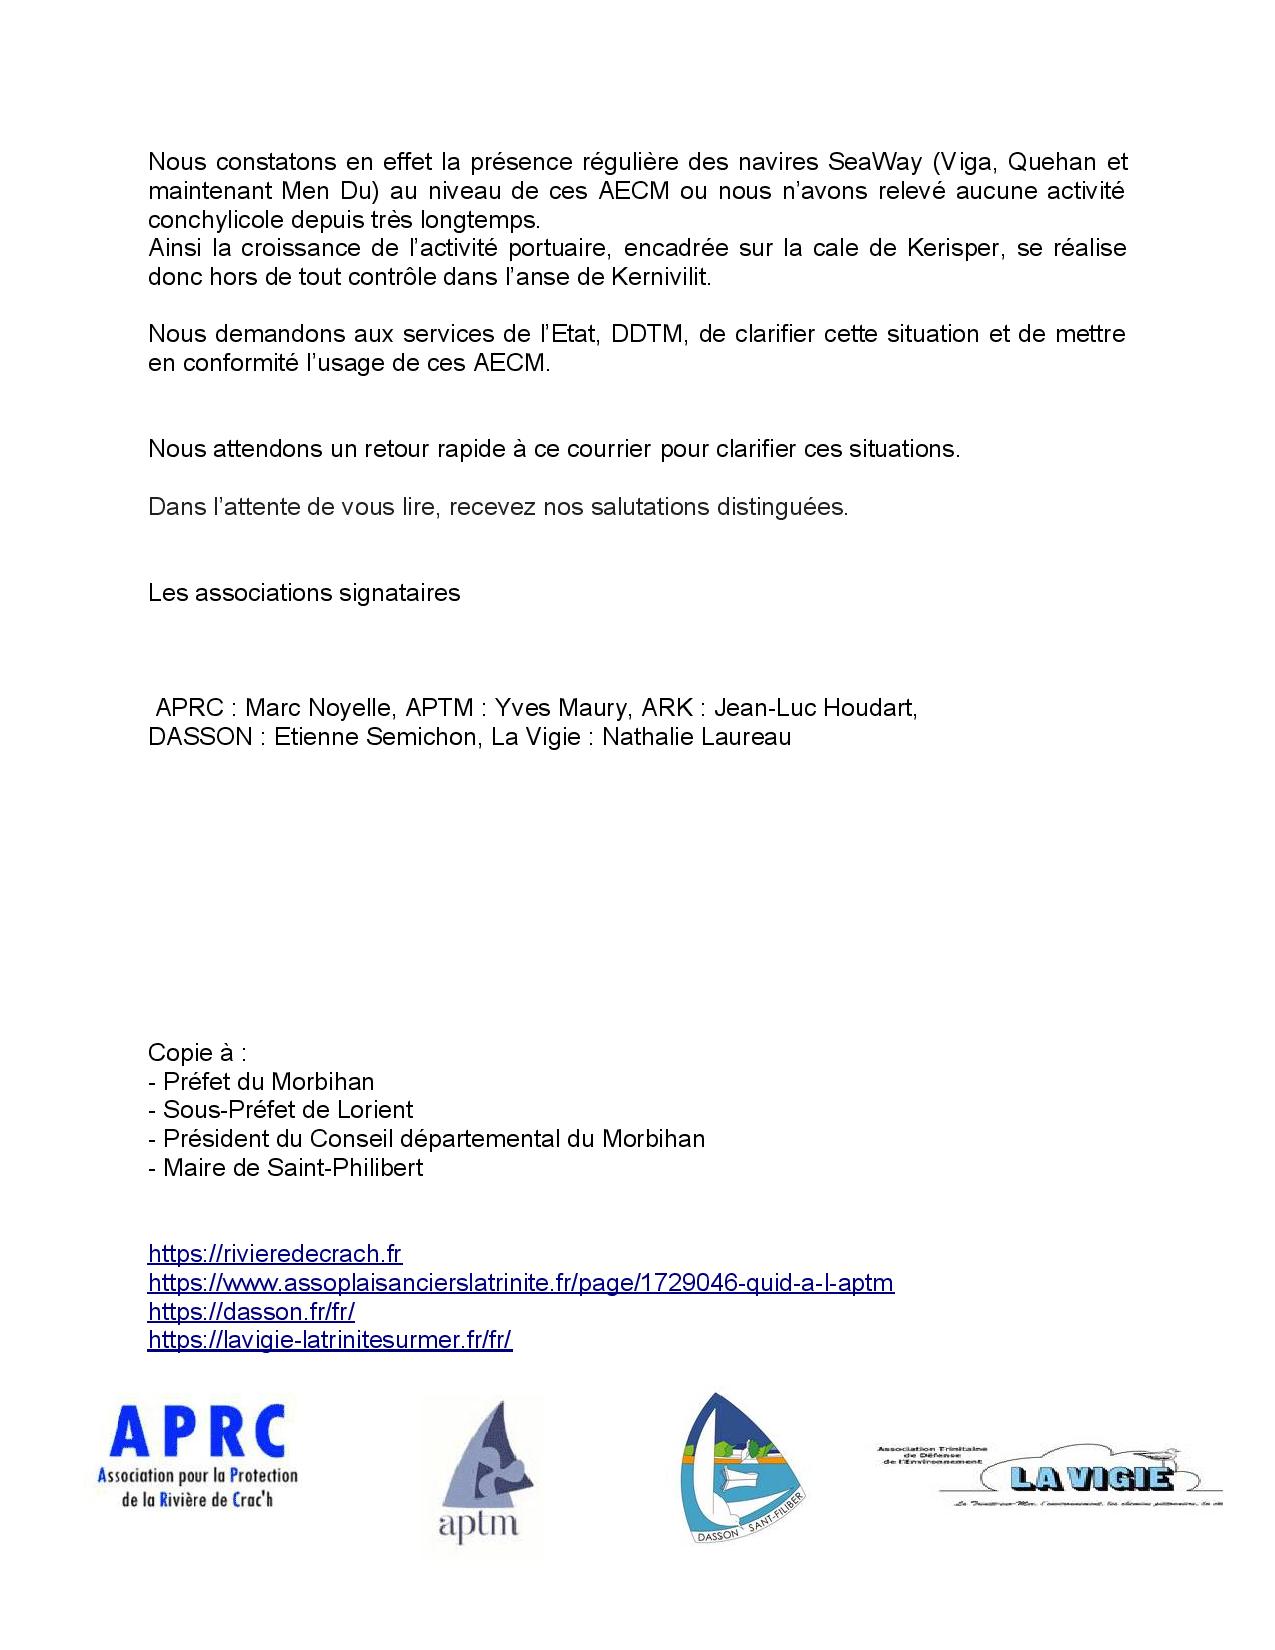 2023 09 20 lettre Assos APRC APTM ARK Dasson La Vigie à AQTA CPM DDTM-page-002.jpg